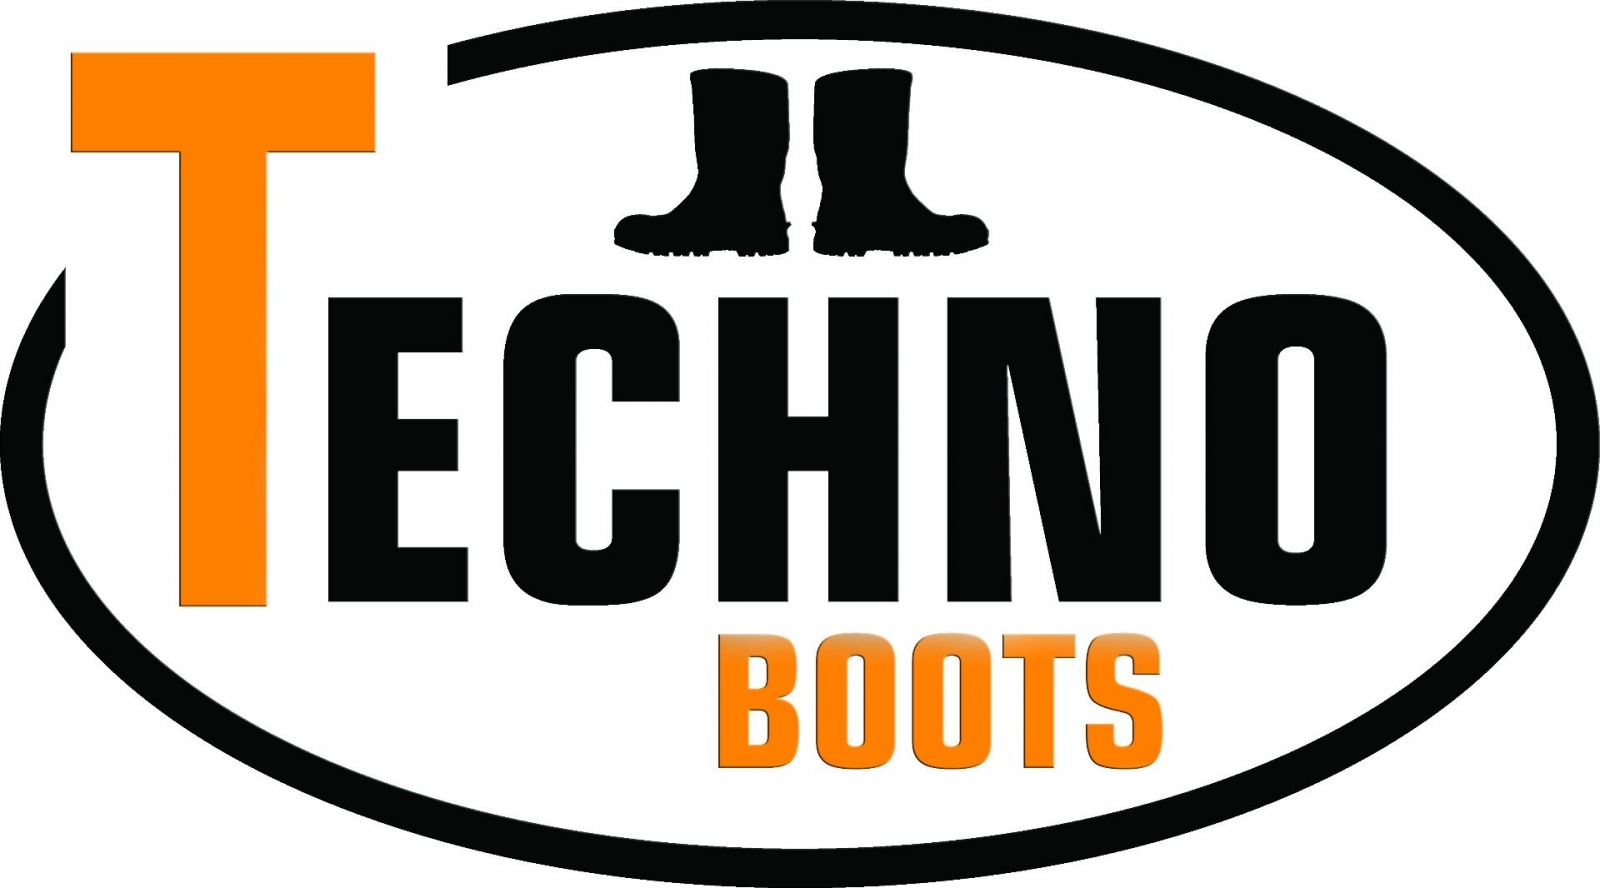 pics/Feldtmann 2016/Schuhe/techno-boots/techno-boots-logo.jpg